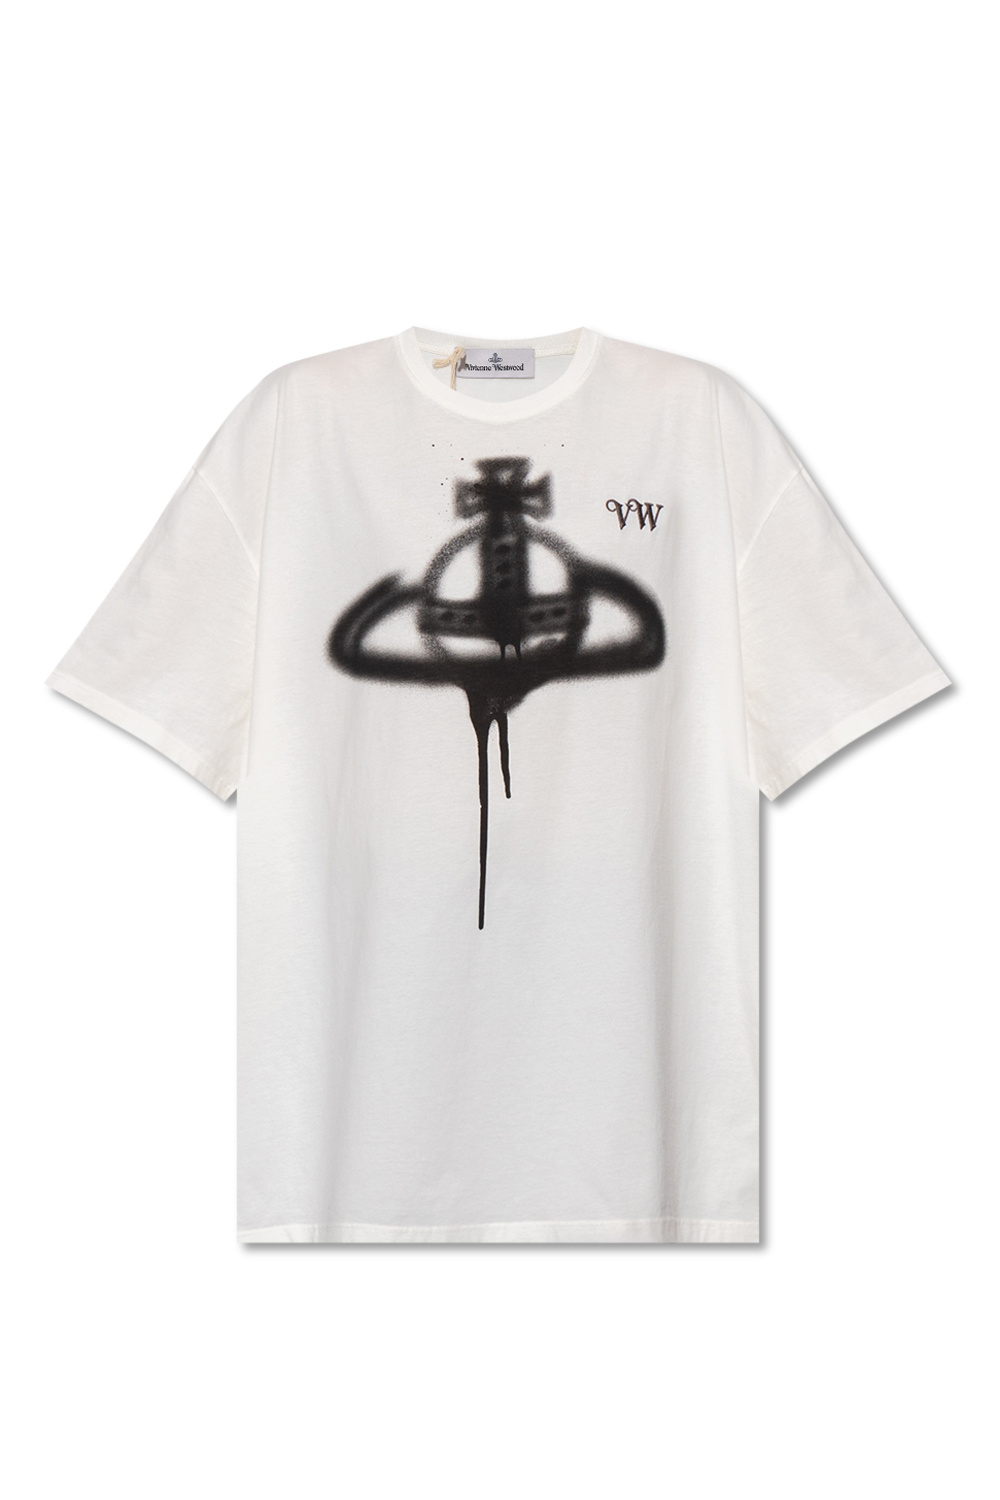 IetpShops Norway - lanvin sweatshirt item - Westwood logo with mit shirt T stickerei Vivienne - logo